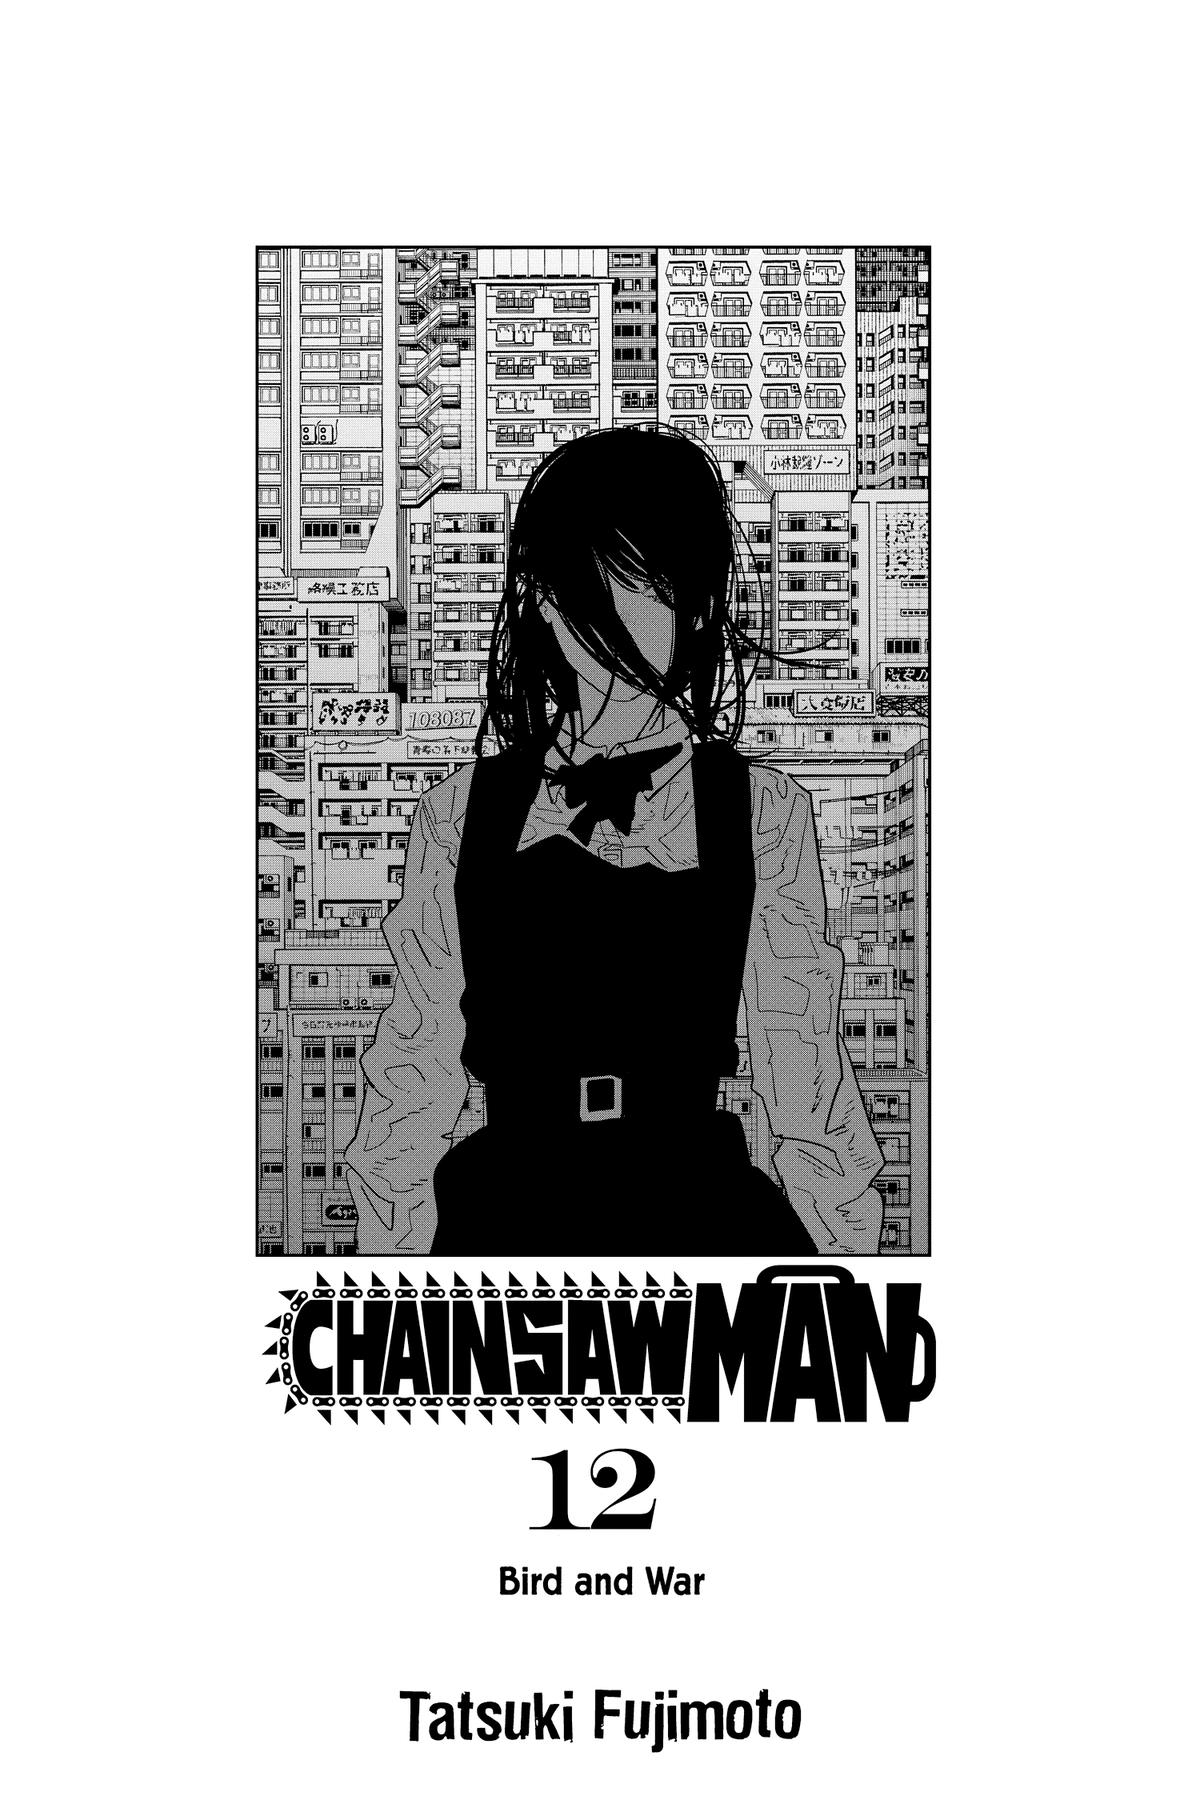 Chainsaw Man Brasil (@ChainsawMan_PT) / X